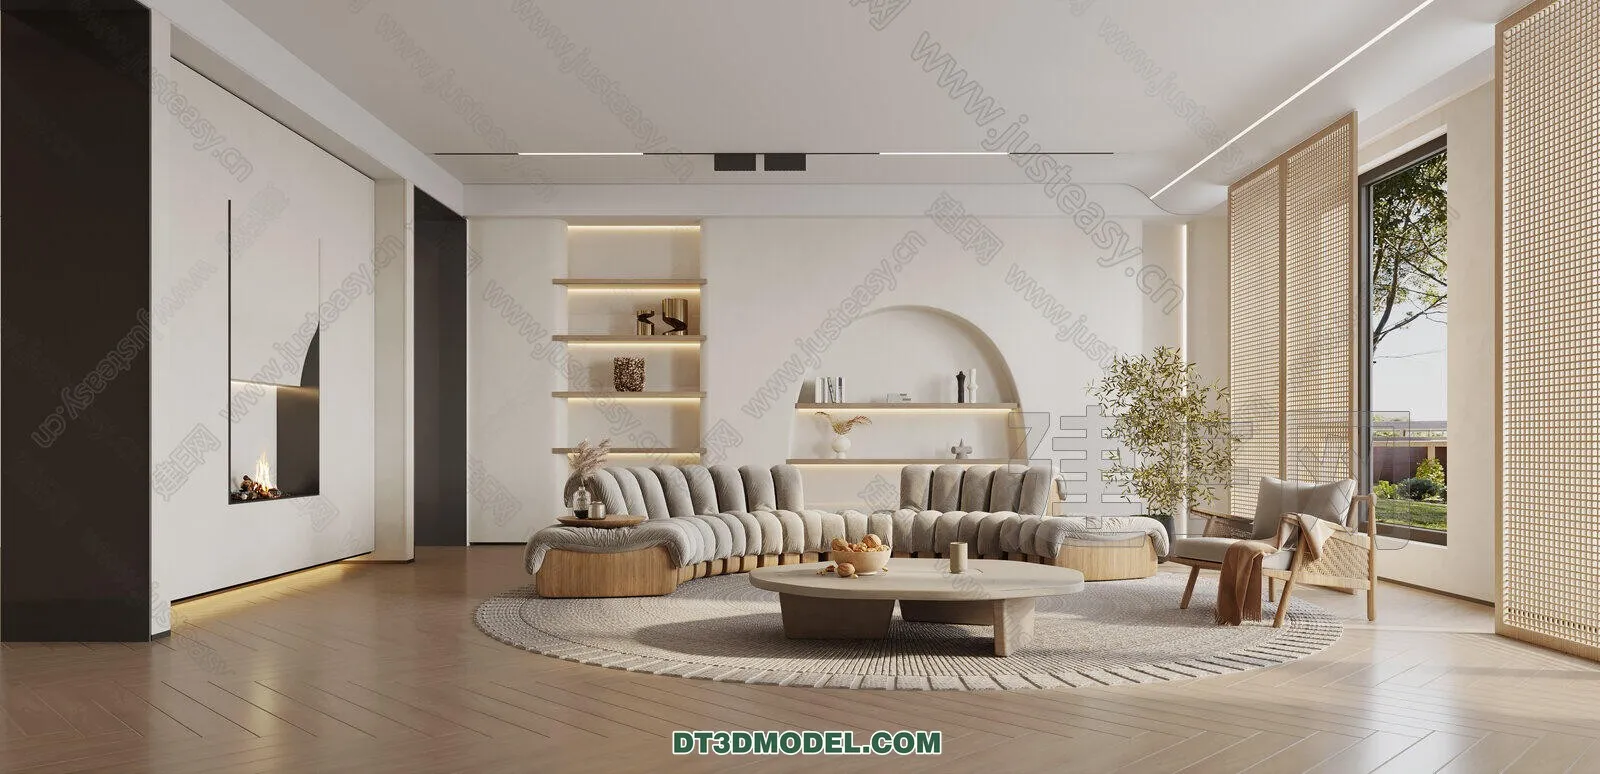 CORONA LIVING ROOM 3D MODELS – 061